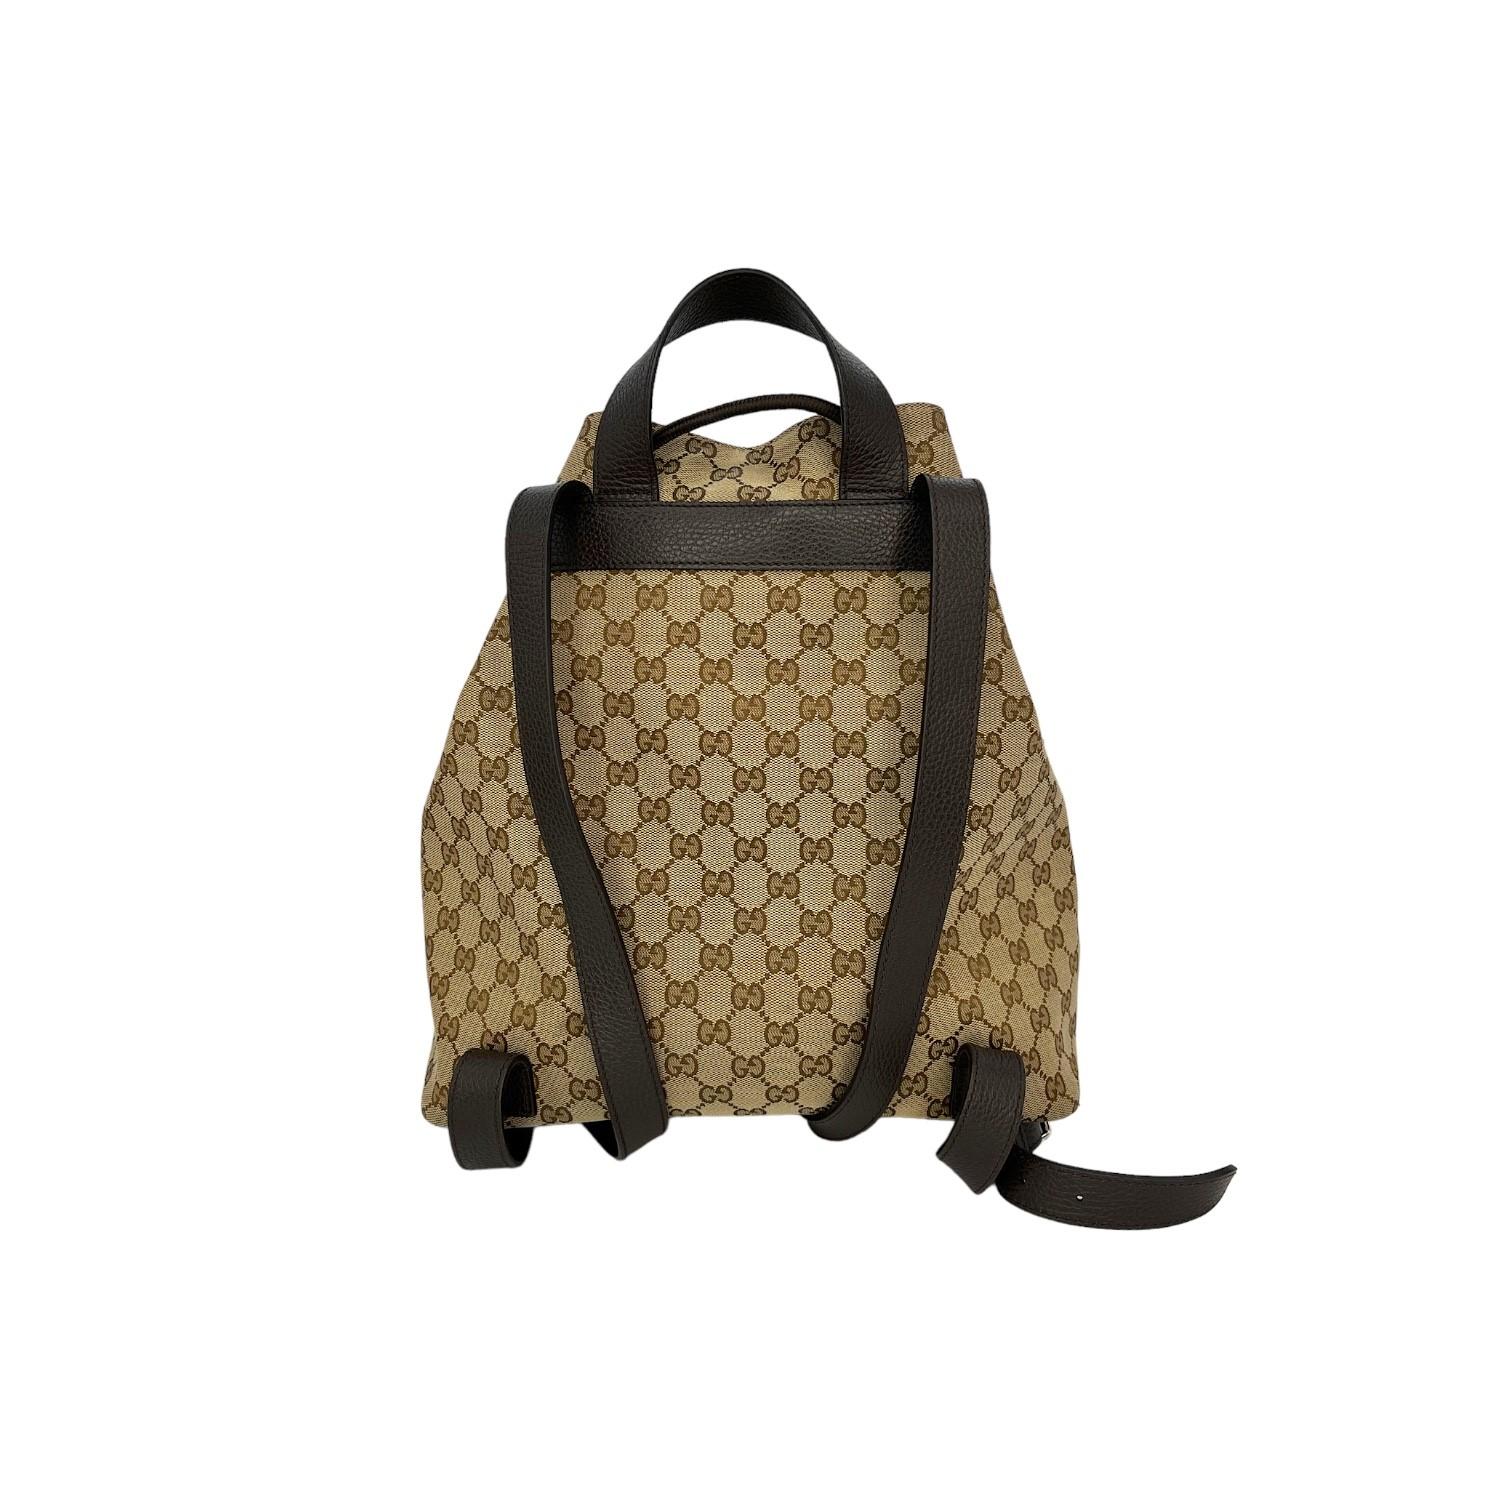 Dieser Gucci GG Supreme Drawstring Backpack wurde in Italien gefertigt und besteht aus dem kultigen GG Supreme Canvas mit Lederbesatz und silberfarbenen Beschlägen. Sie hat einen oberen Ledergriff und verstellbare Schulterriemen aus Leder. Sie hat